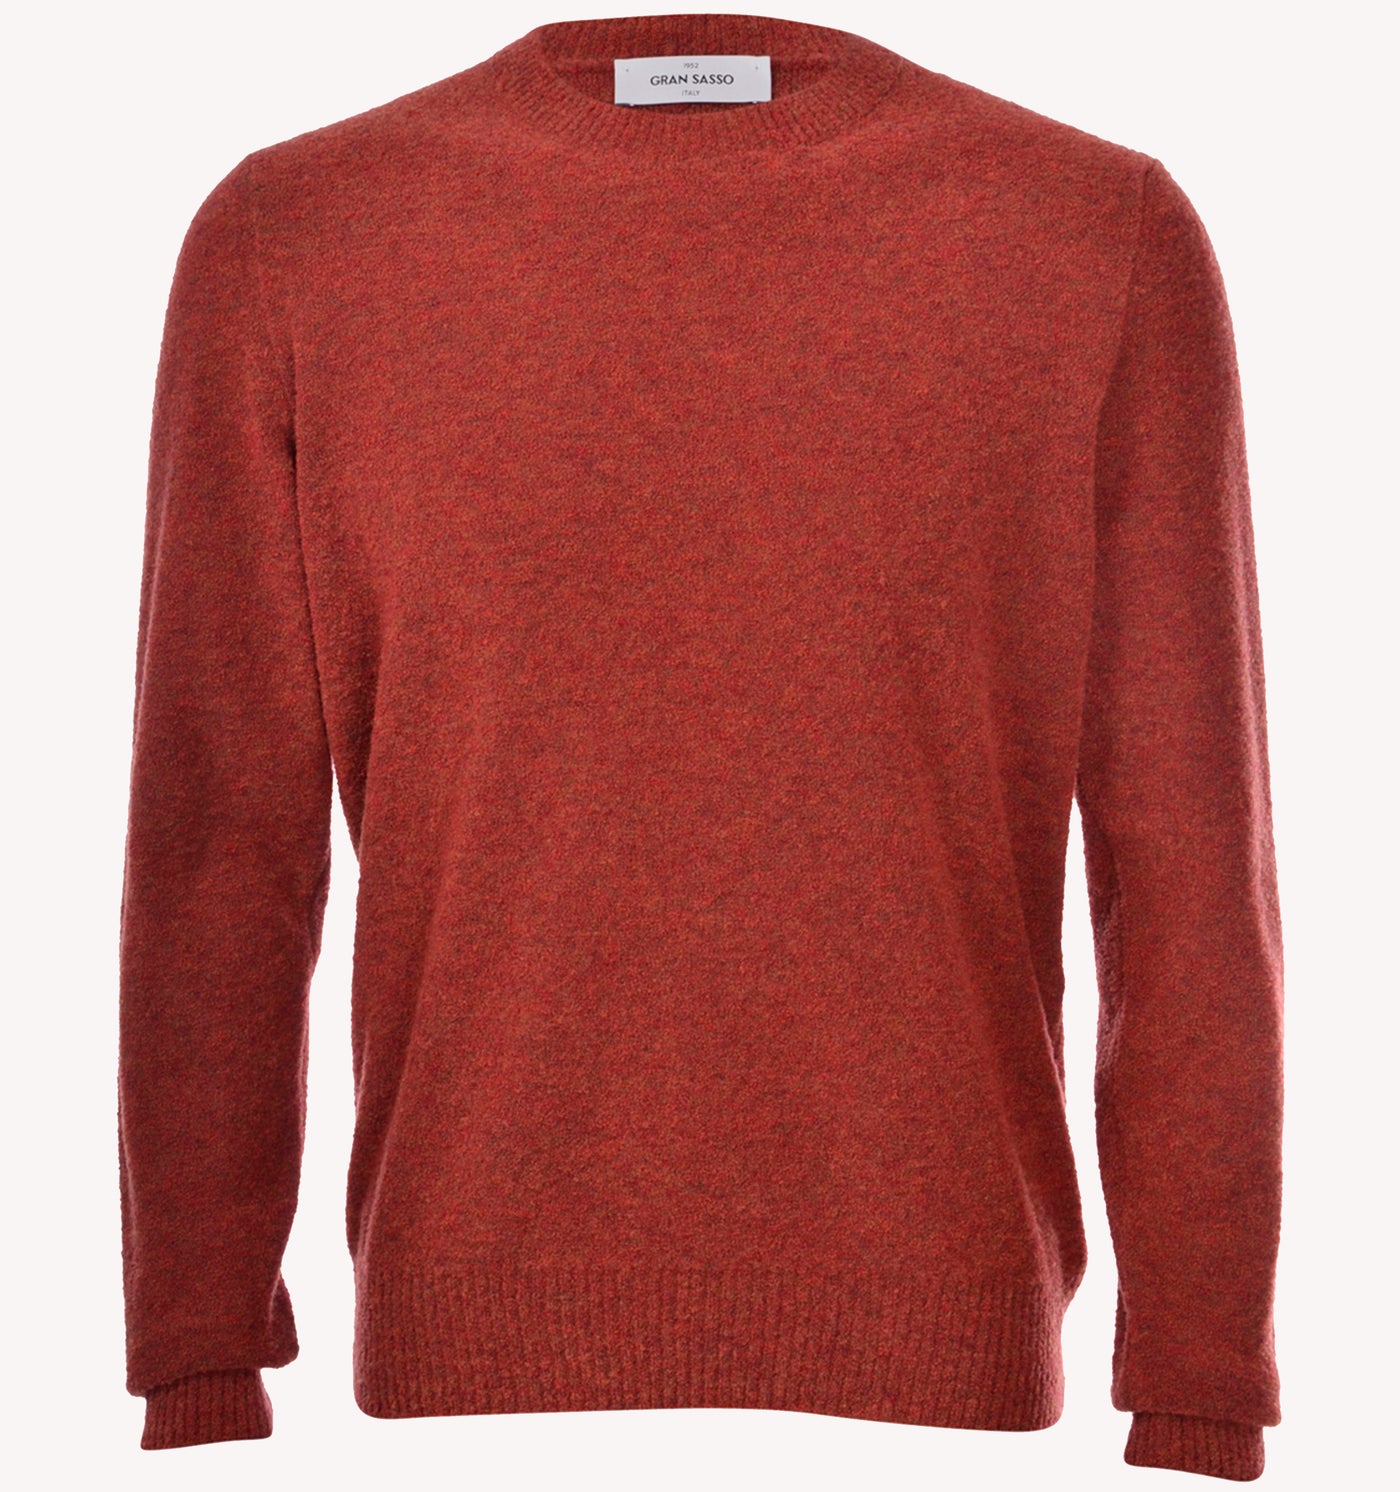 Gran Sasso Boucle Sweater in Rust